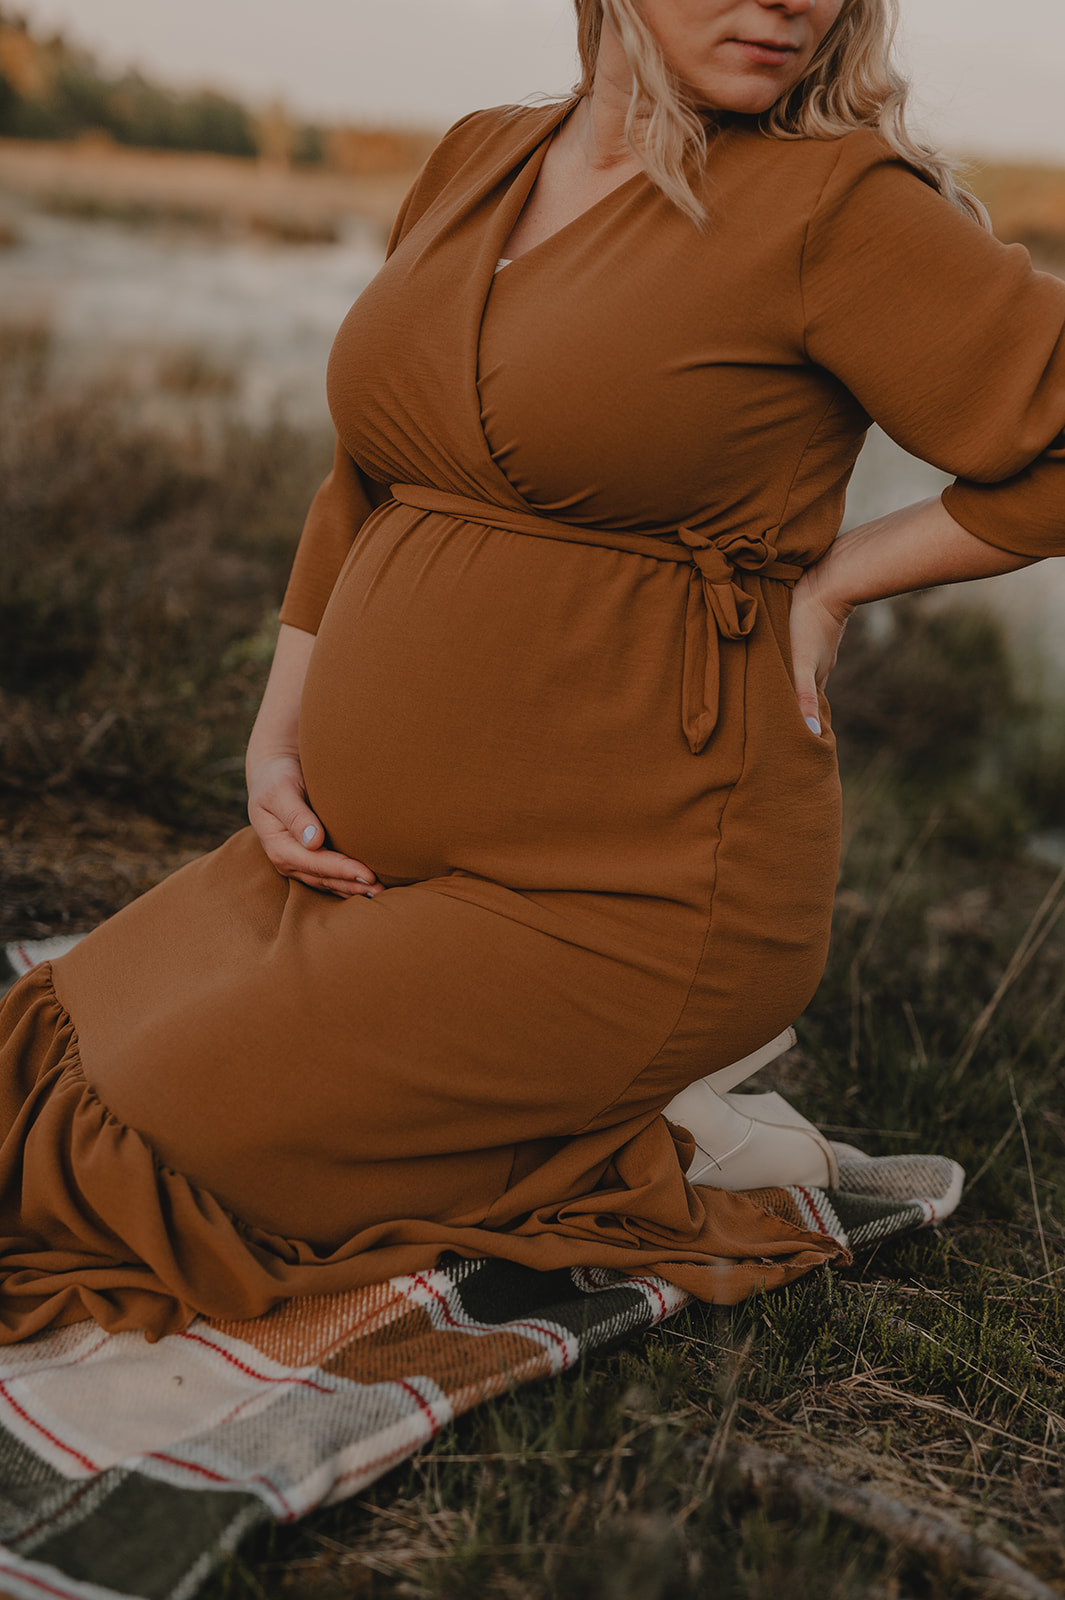 zwangerschapsfotoshoot gelderland veluwe fotograaf fotoshoot zwanger buiten met partner apeldoorn zwolle hattem heerde 